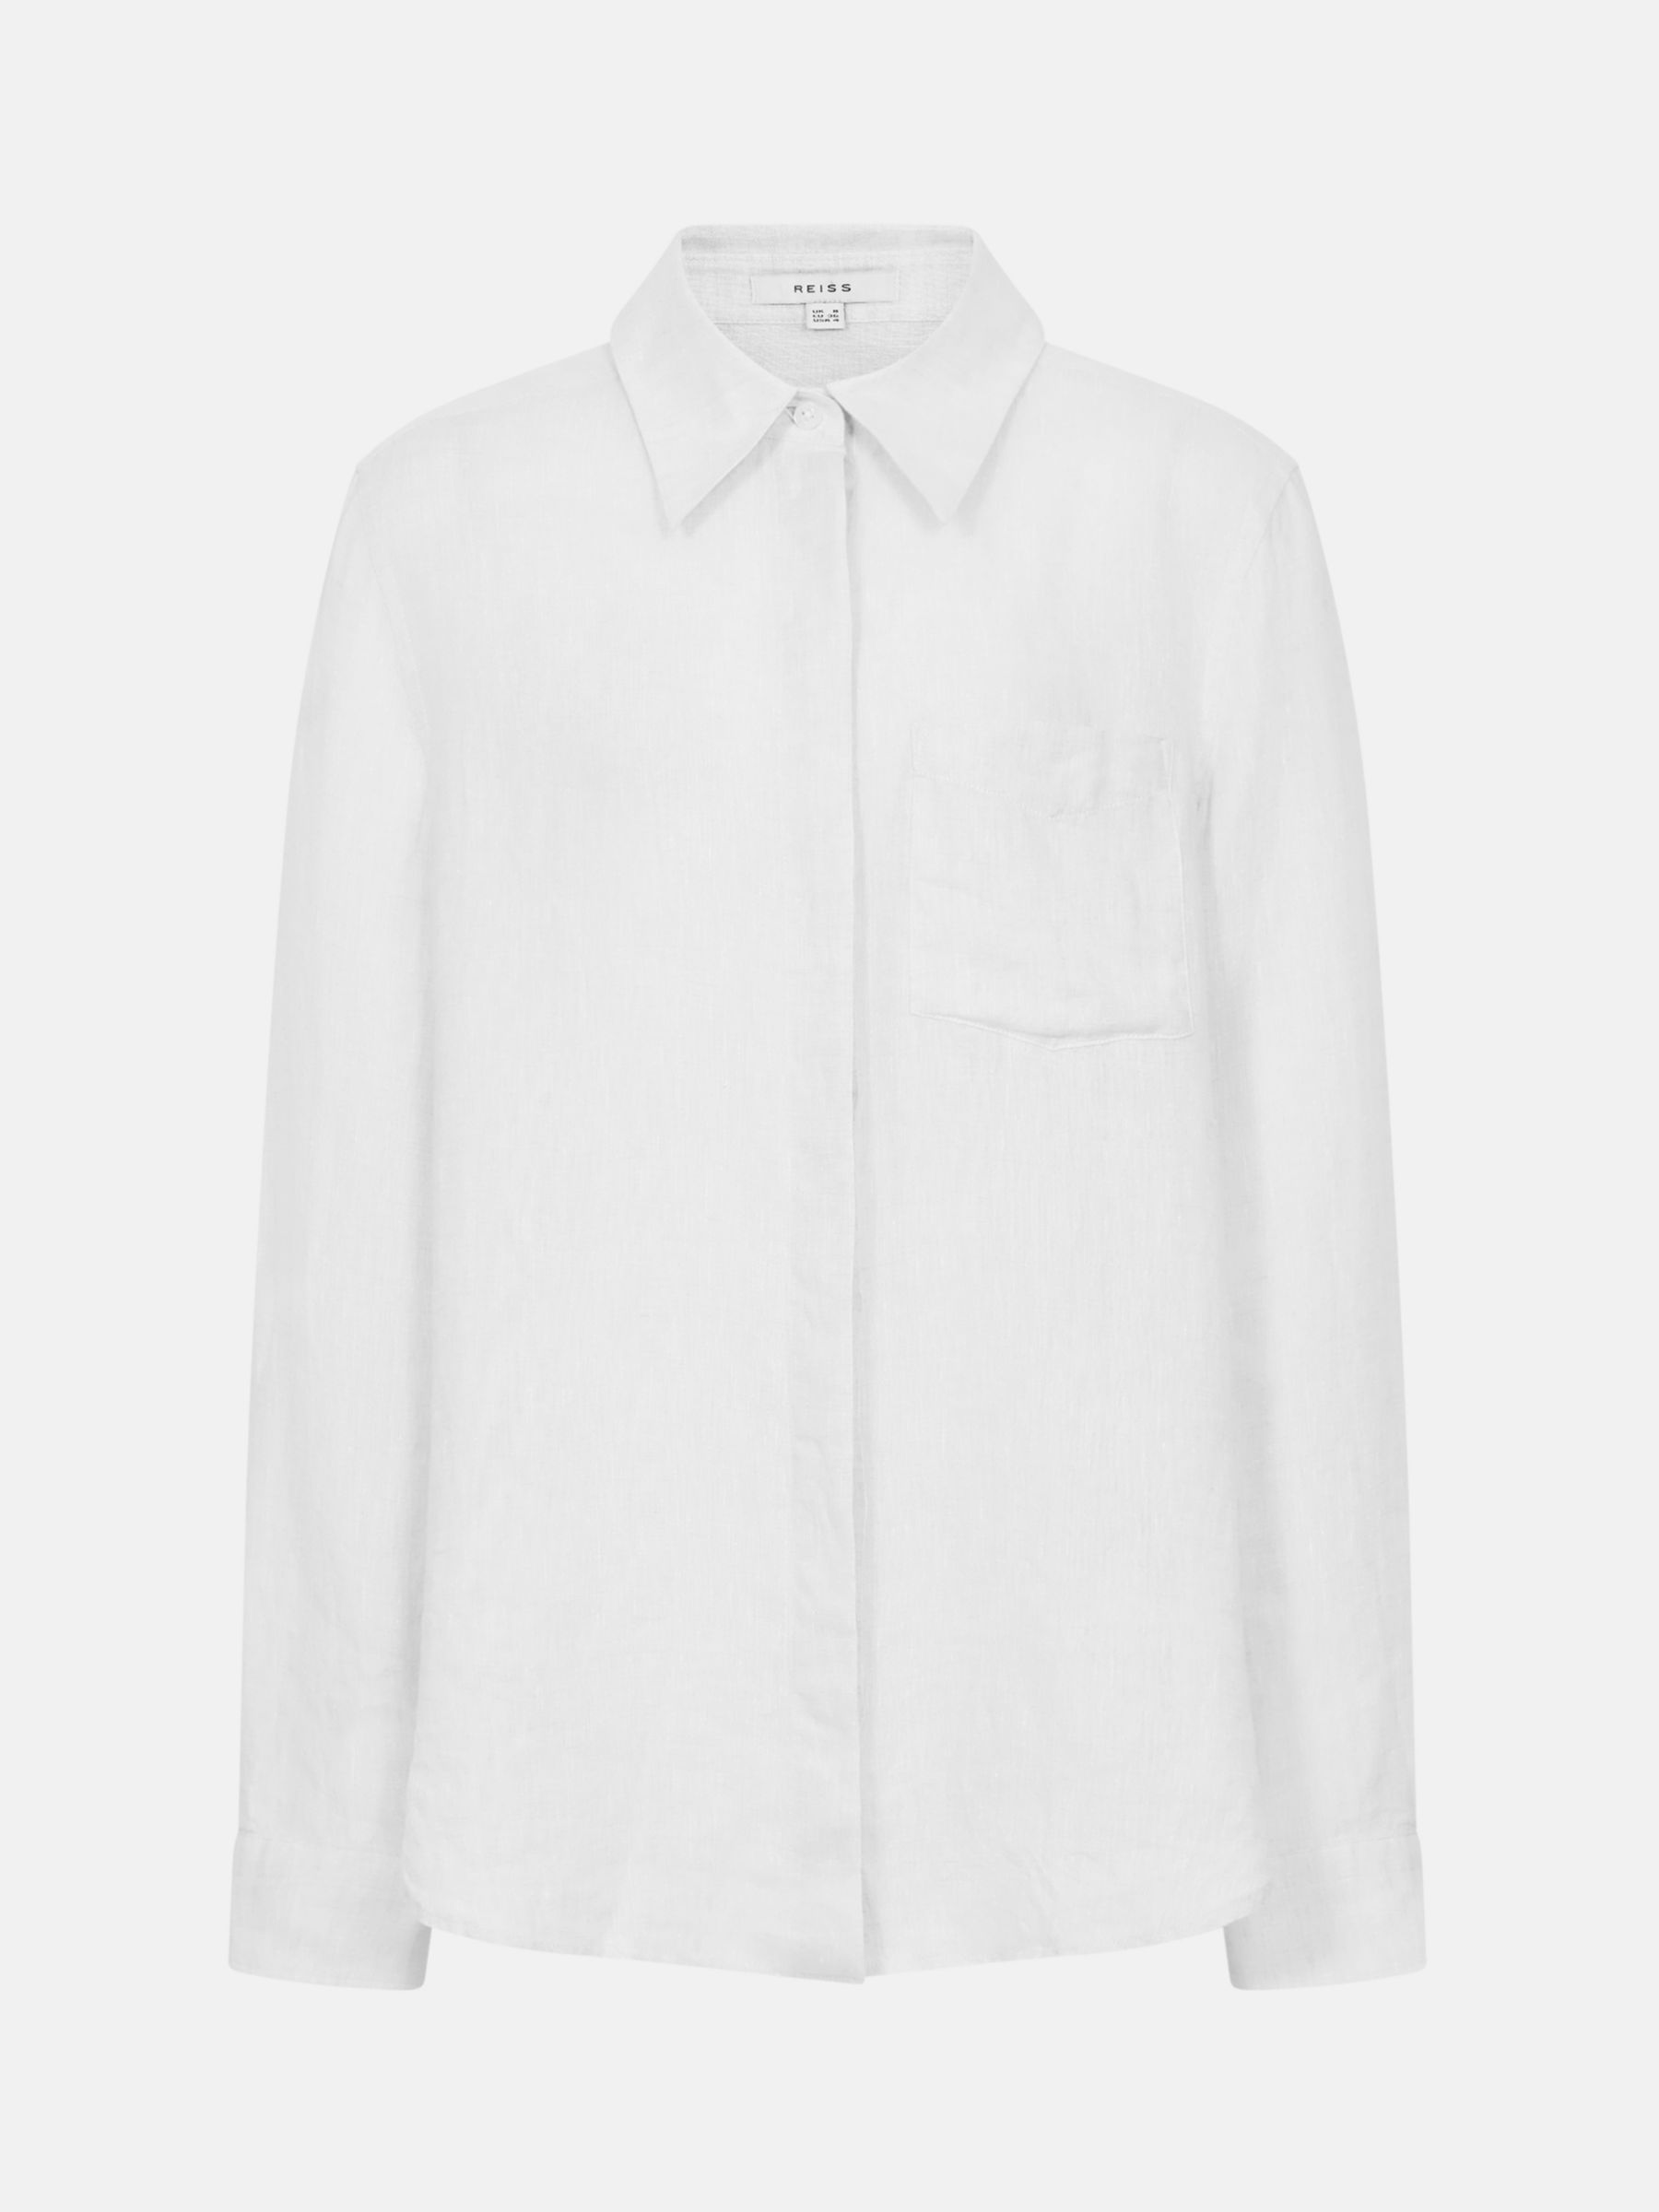 Reiss Campbell Linen Shirt, White, 4